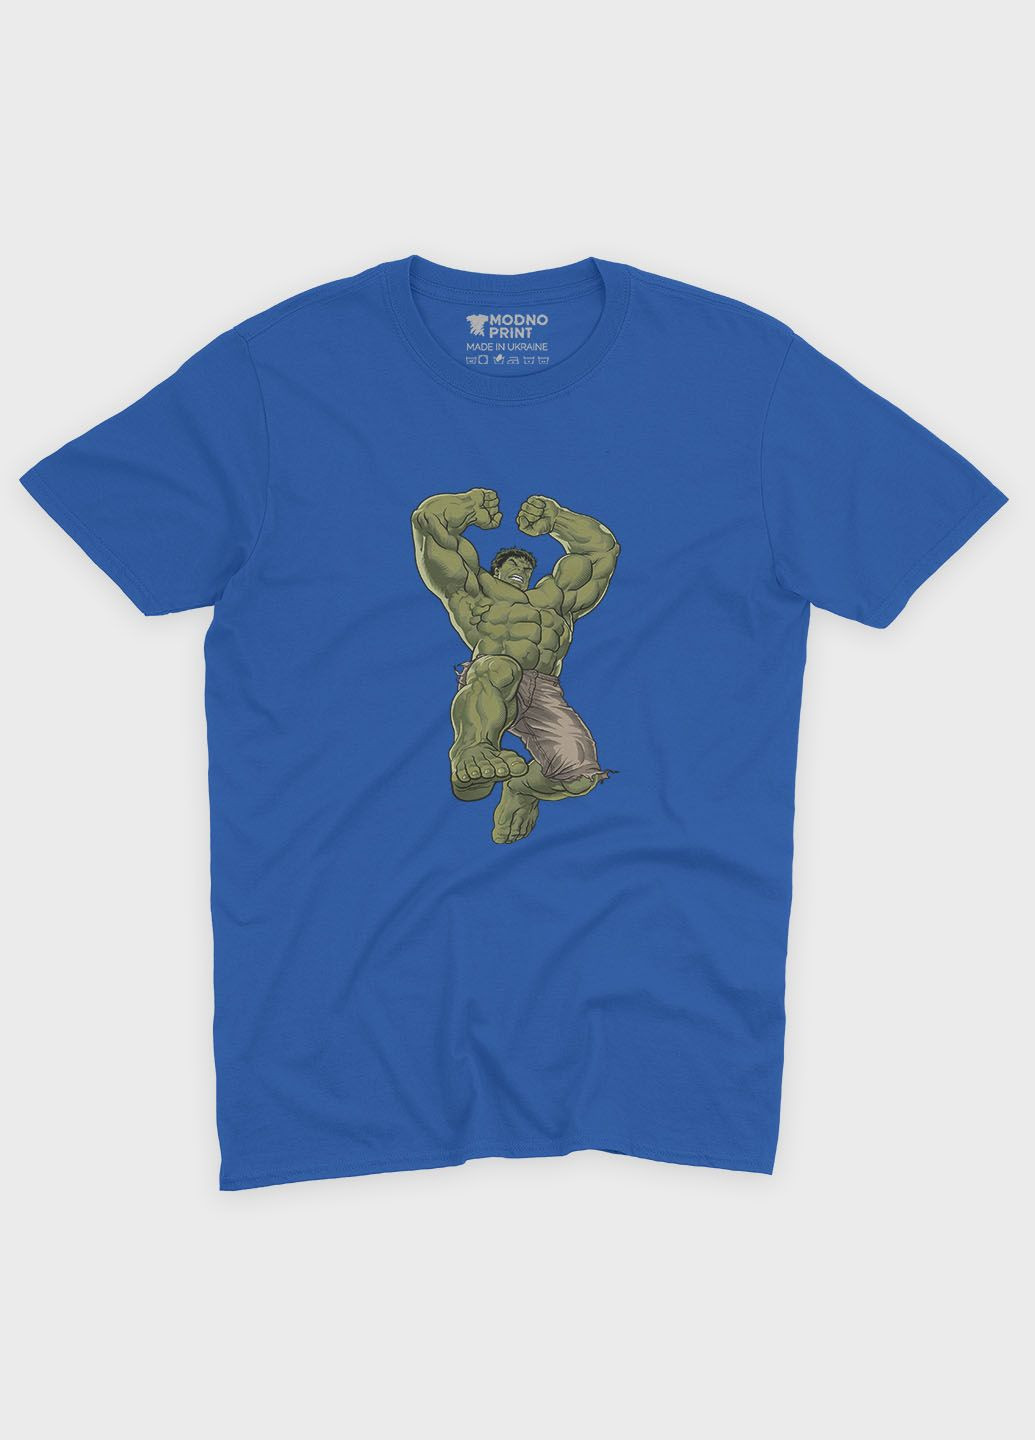 Синяя демисезонная футболка для девочки с принтом супергероя - халк (ts001-1-grr-006-018-011-g) Modno